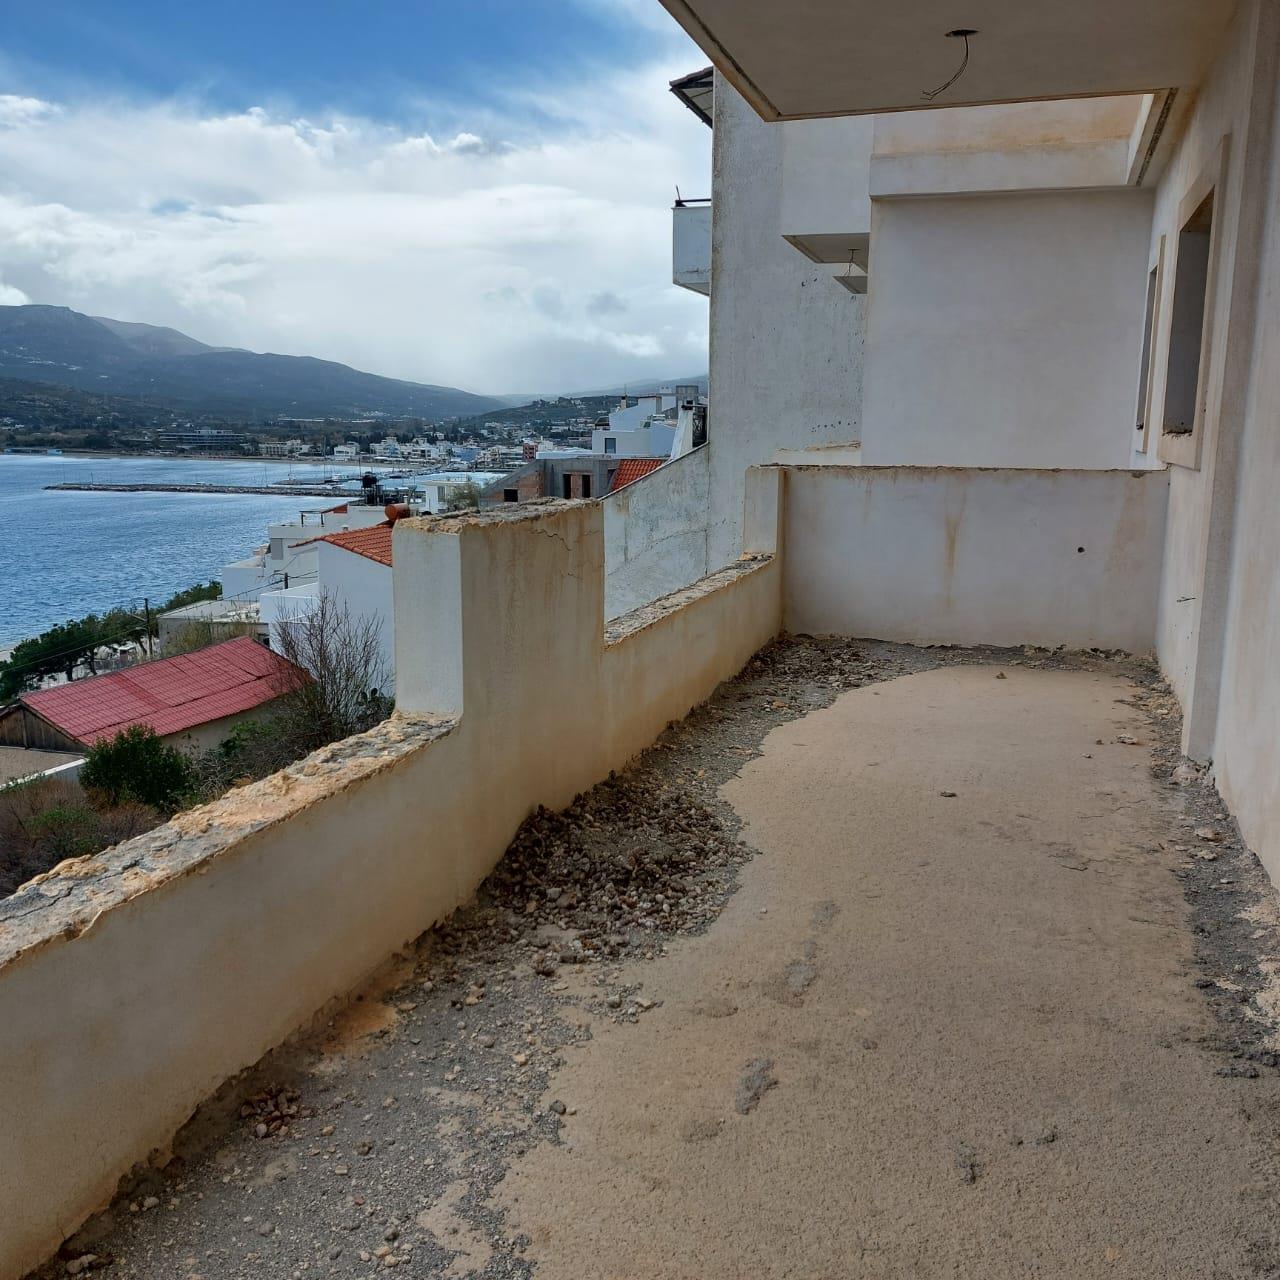 Ημιτελές διαμέρισμα δευτέρου ορόφου μόλις 160 μέτρα από τη θάλασσα στη Σητεία, Ανατολική Κρήτη.